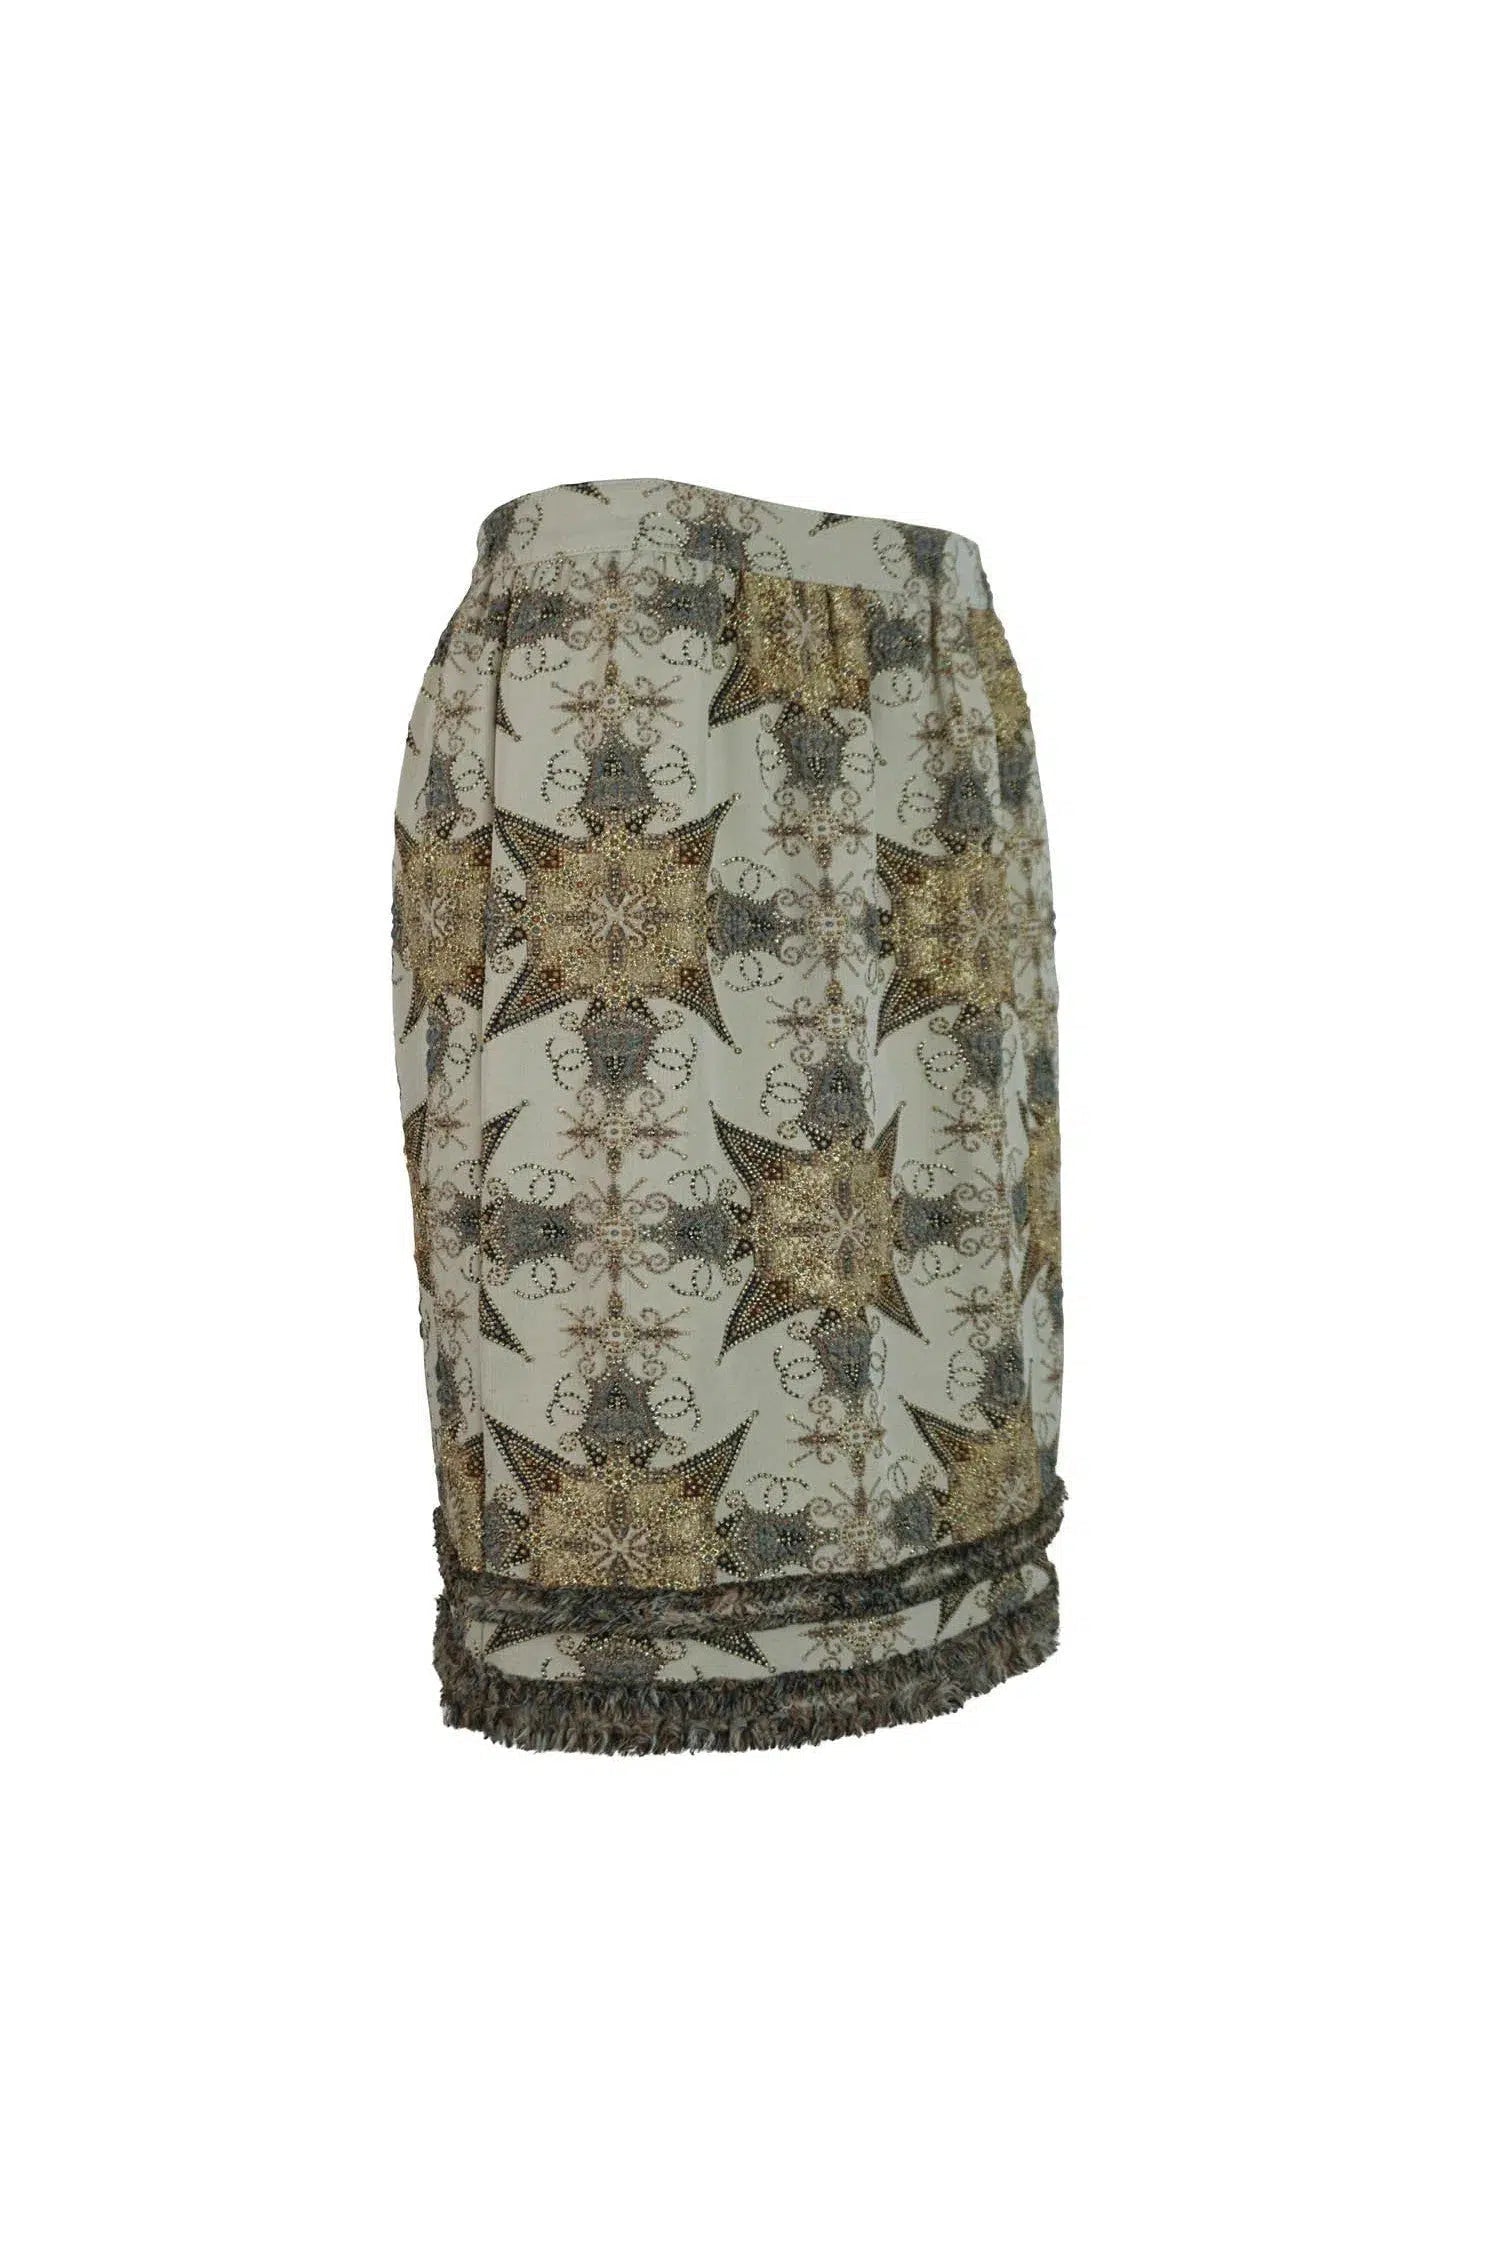 Chanel Embellished Skirt 40/8